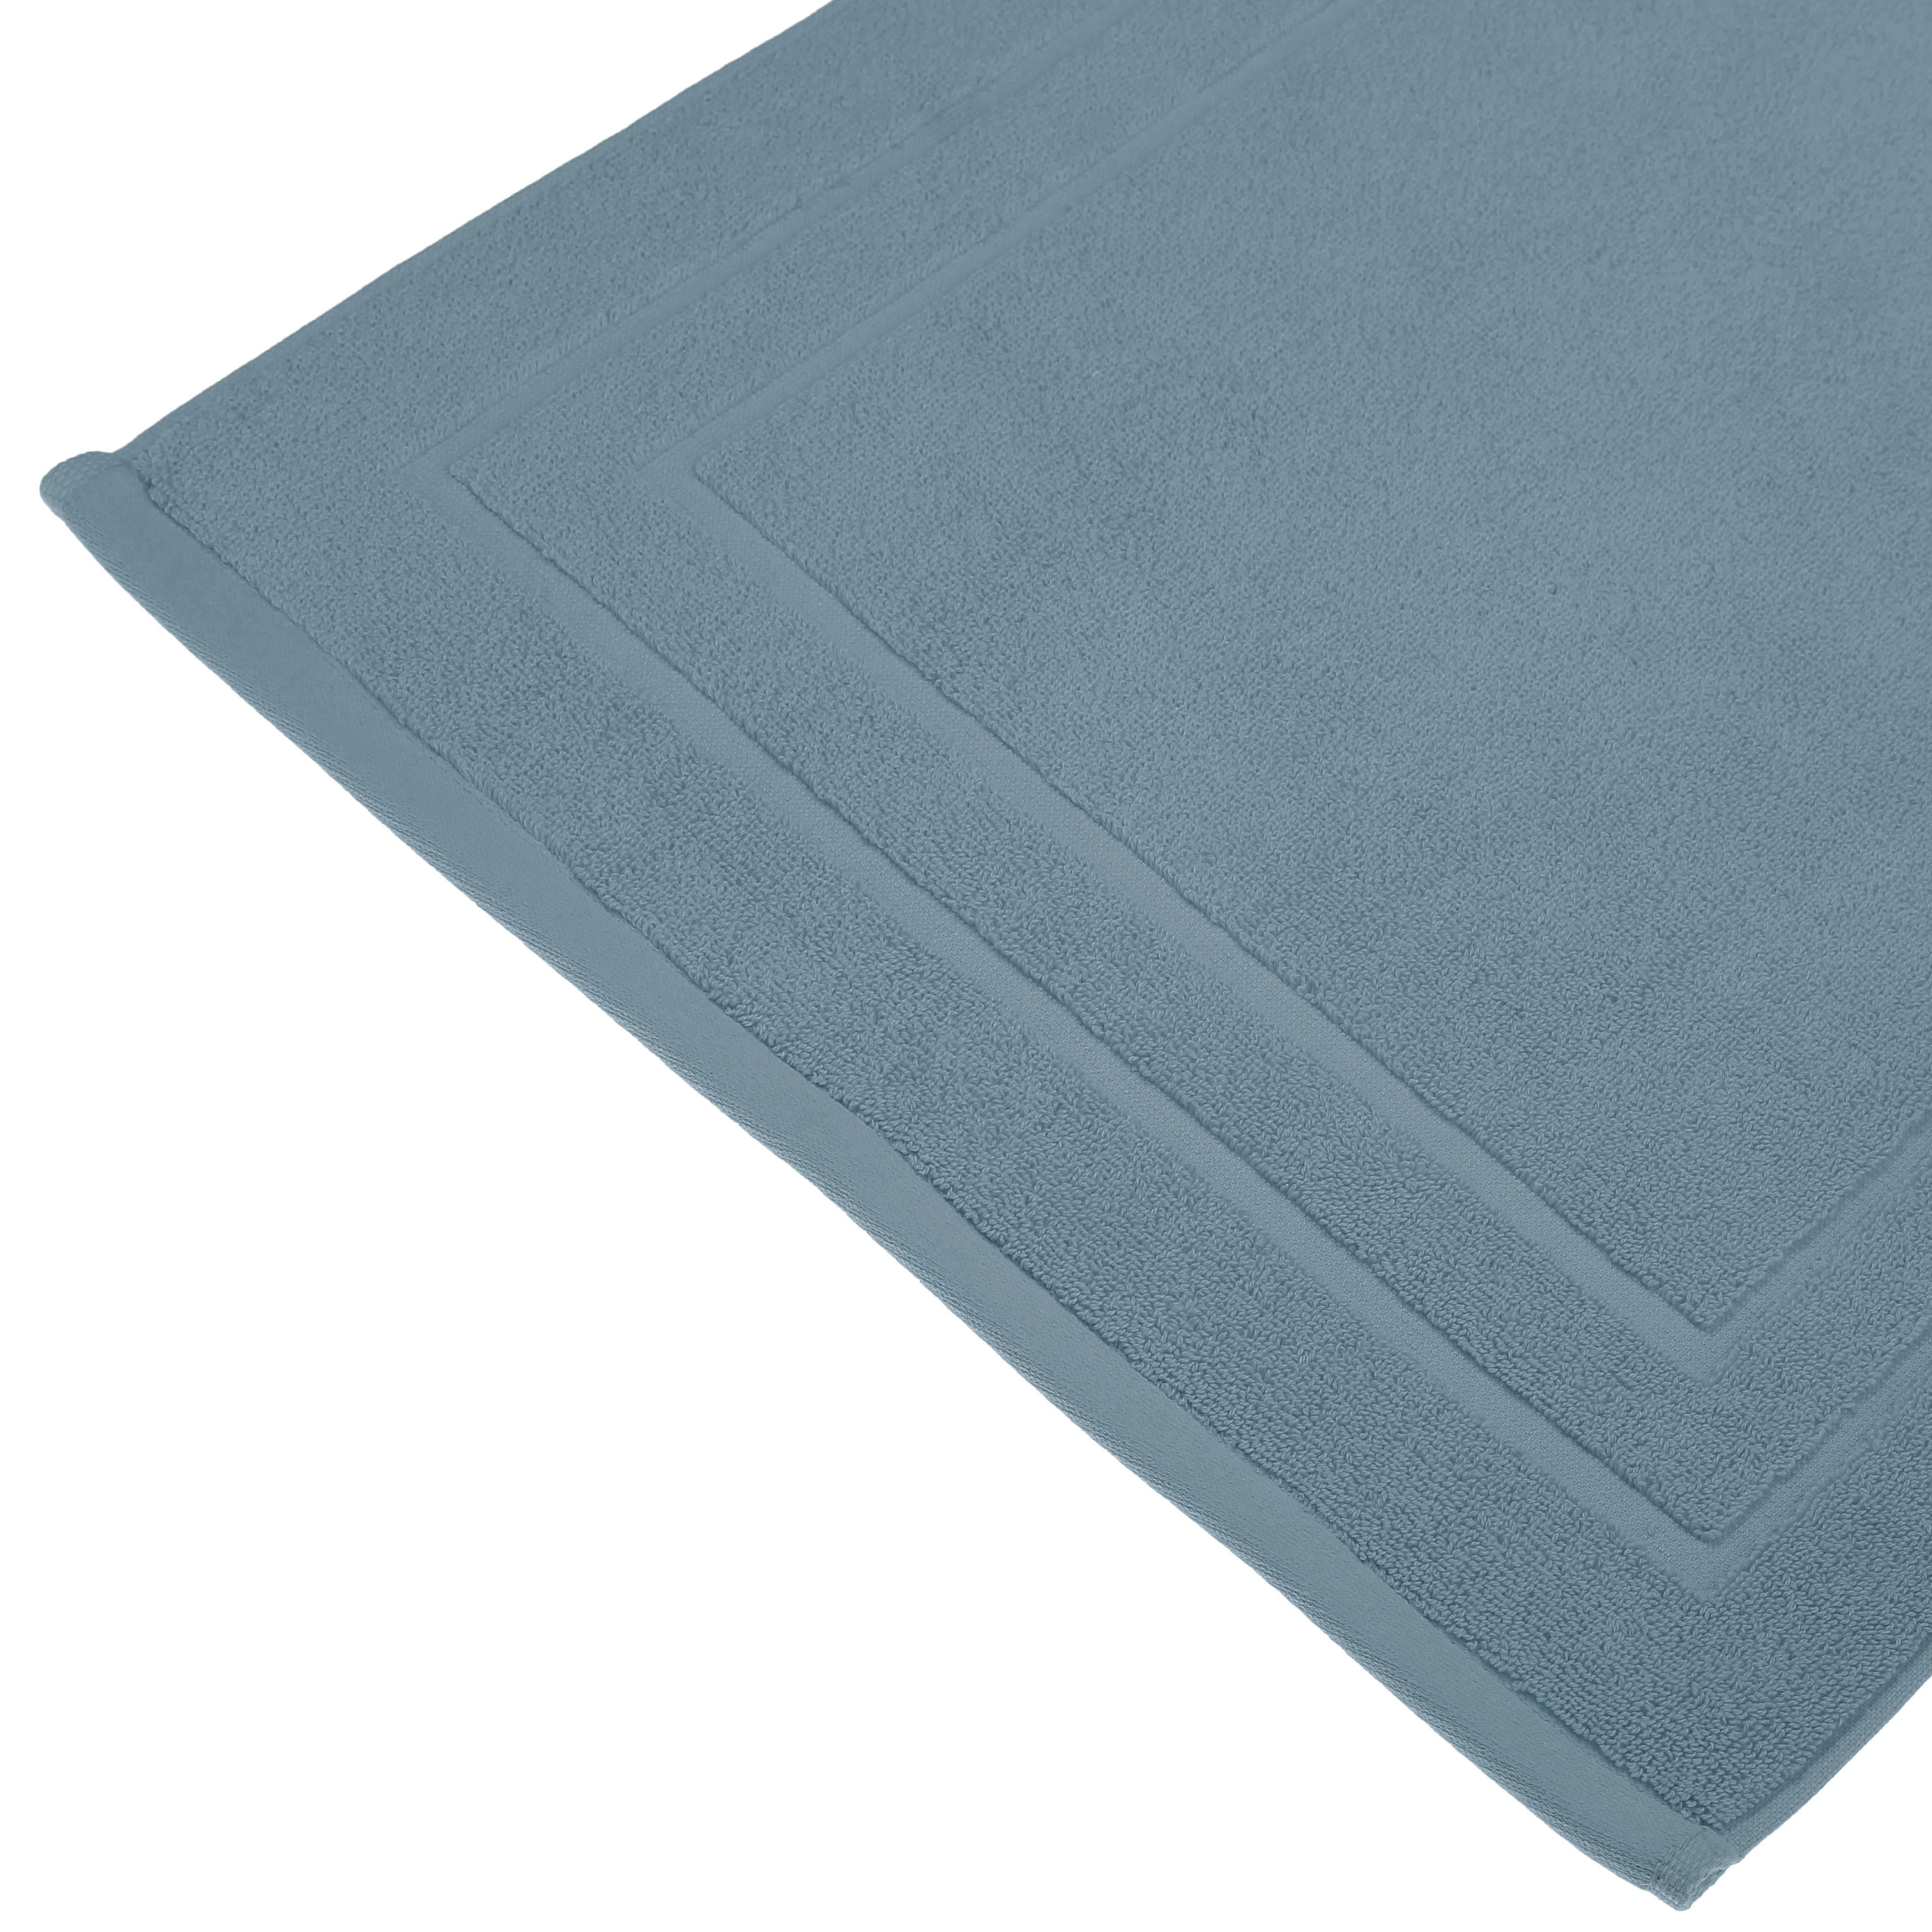 Badkamerkleed-badmat voor op de vloer blauw 50 x 70 cm